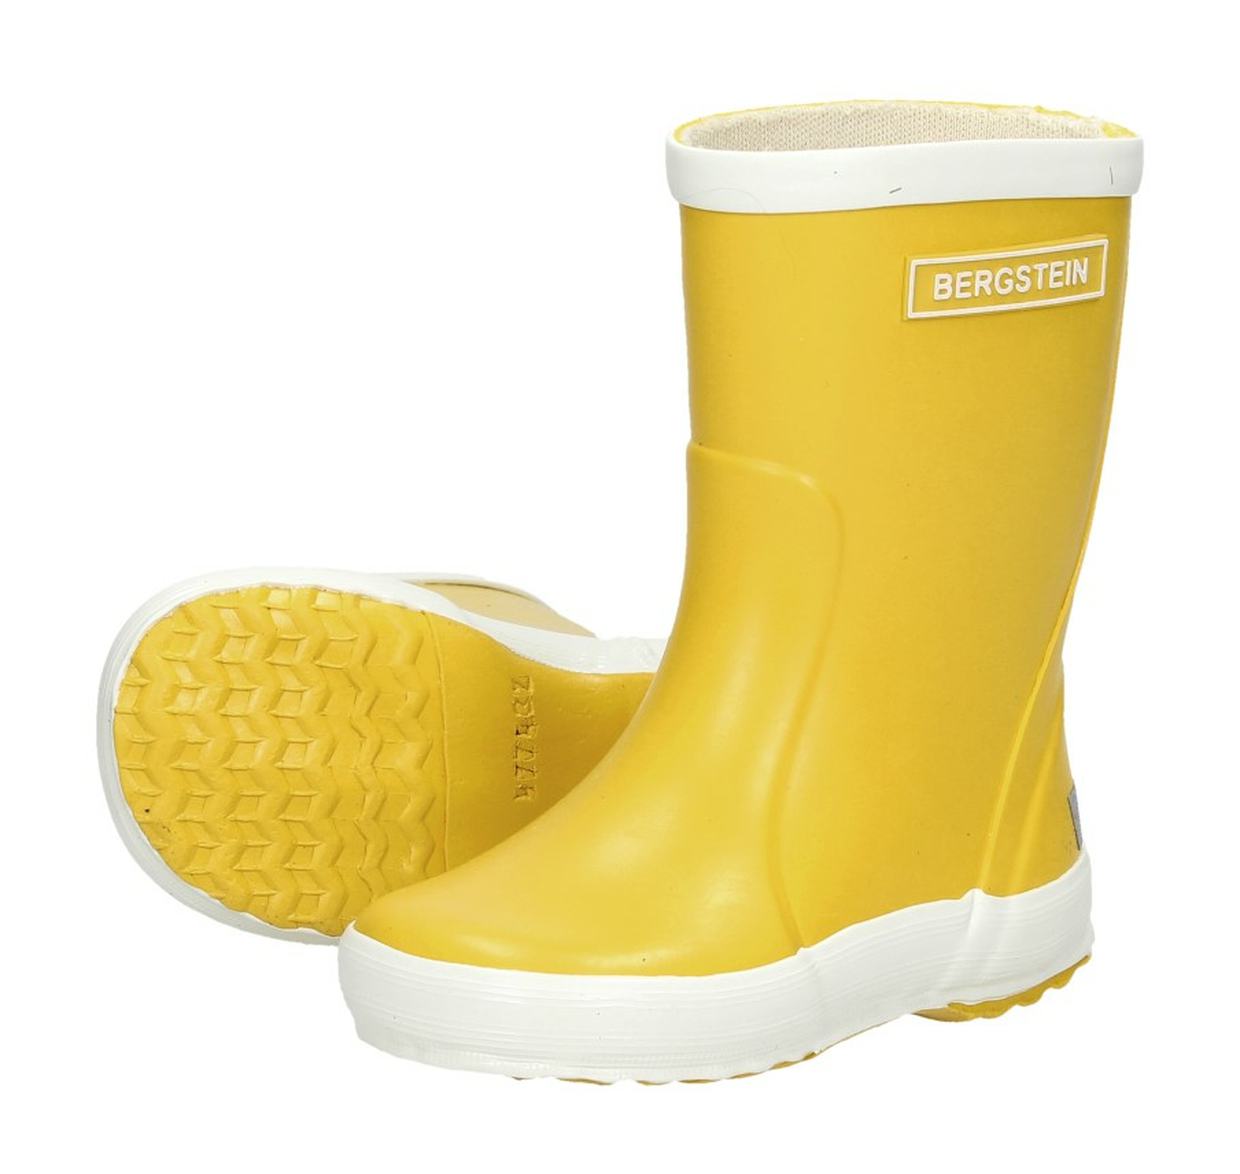 Bn Rainboot Yellow